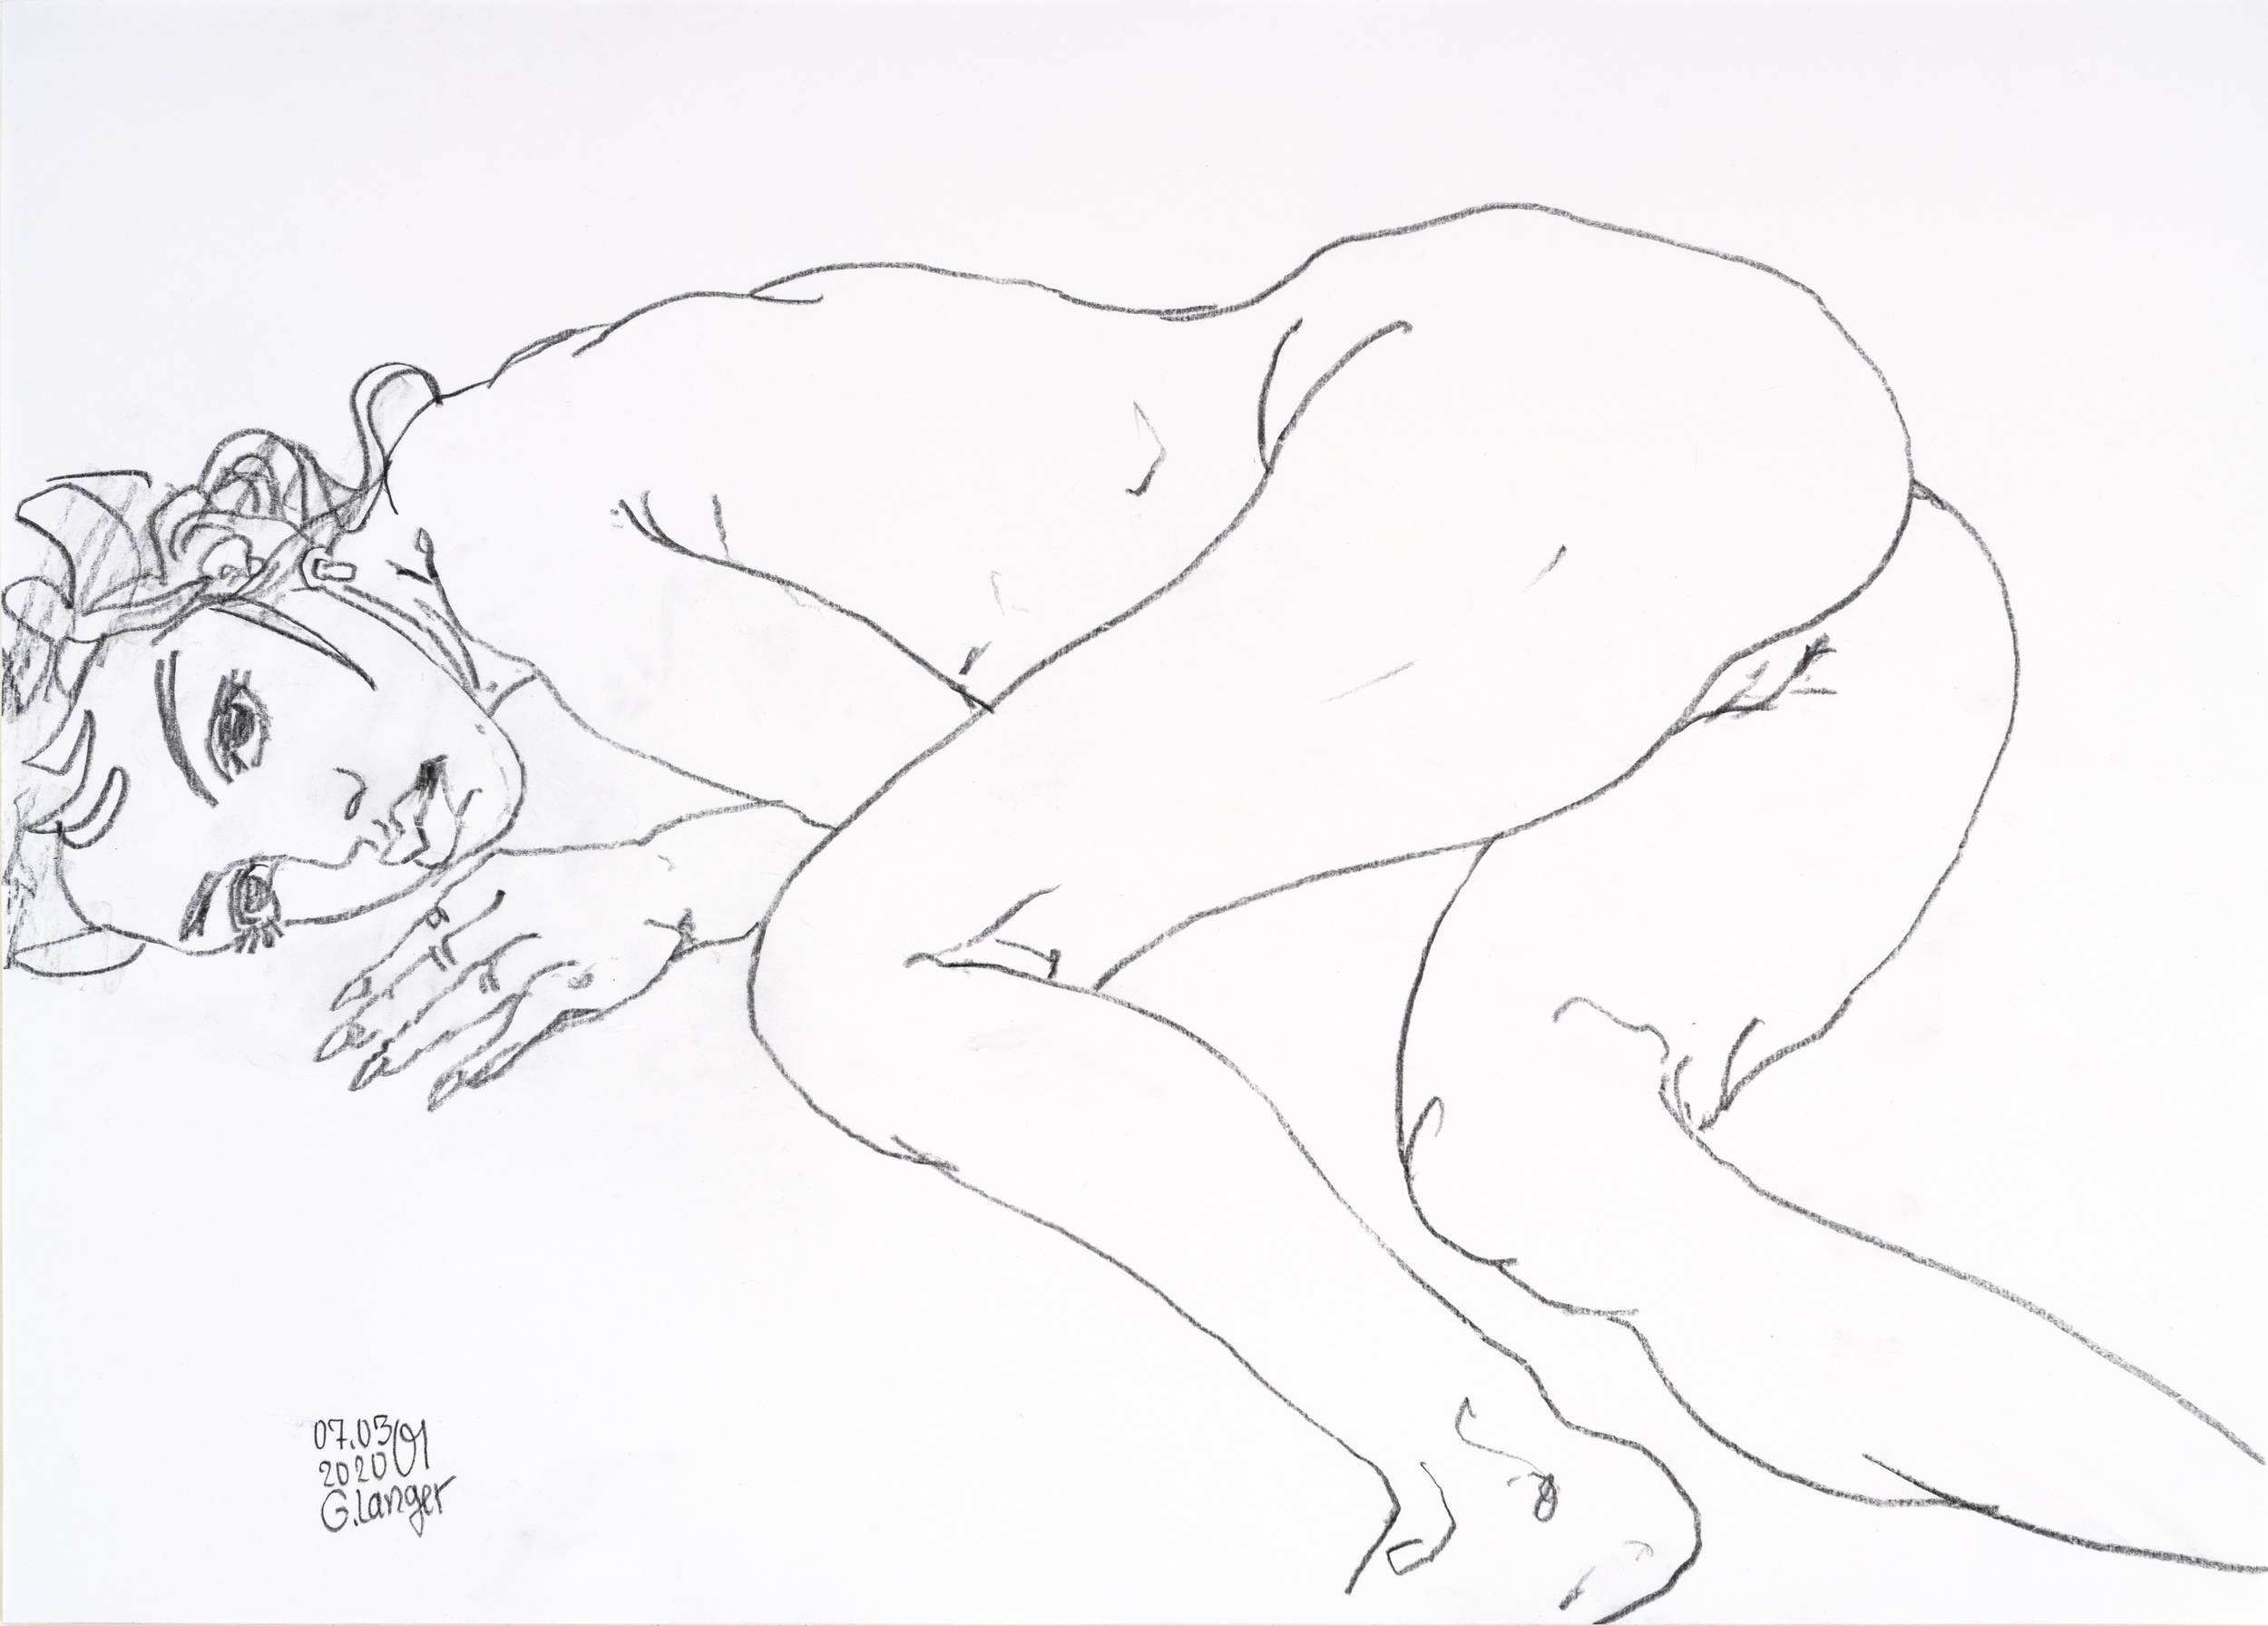 Gunter Langer, Liegendes nacktes Mädchen, 2020, Zeichenpapier, 50 x 70 cm